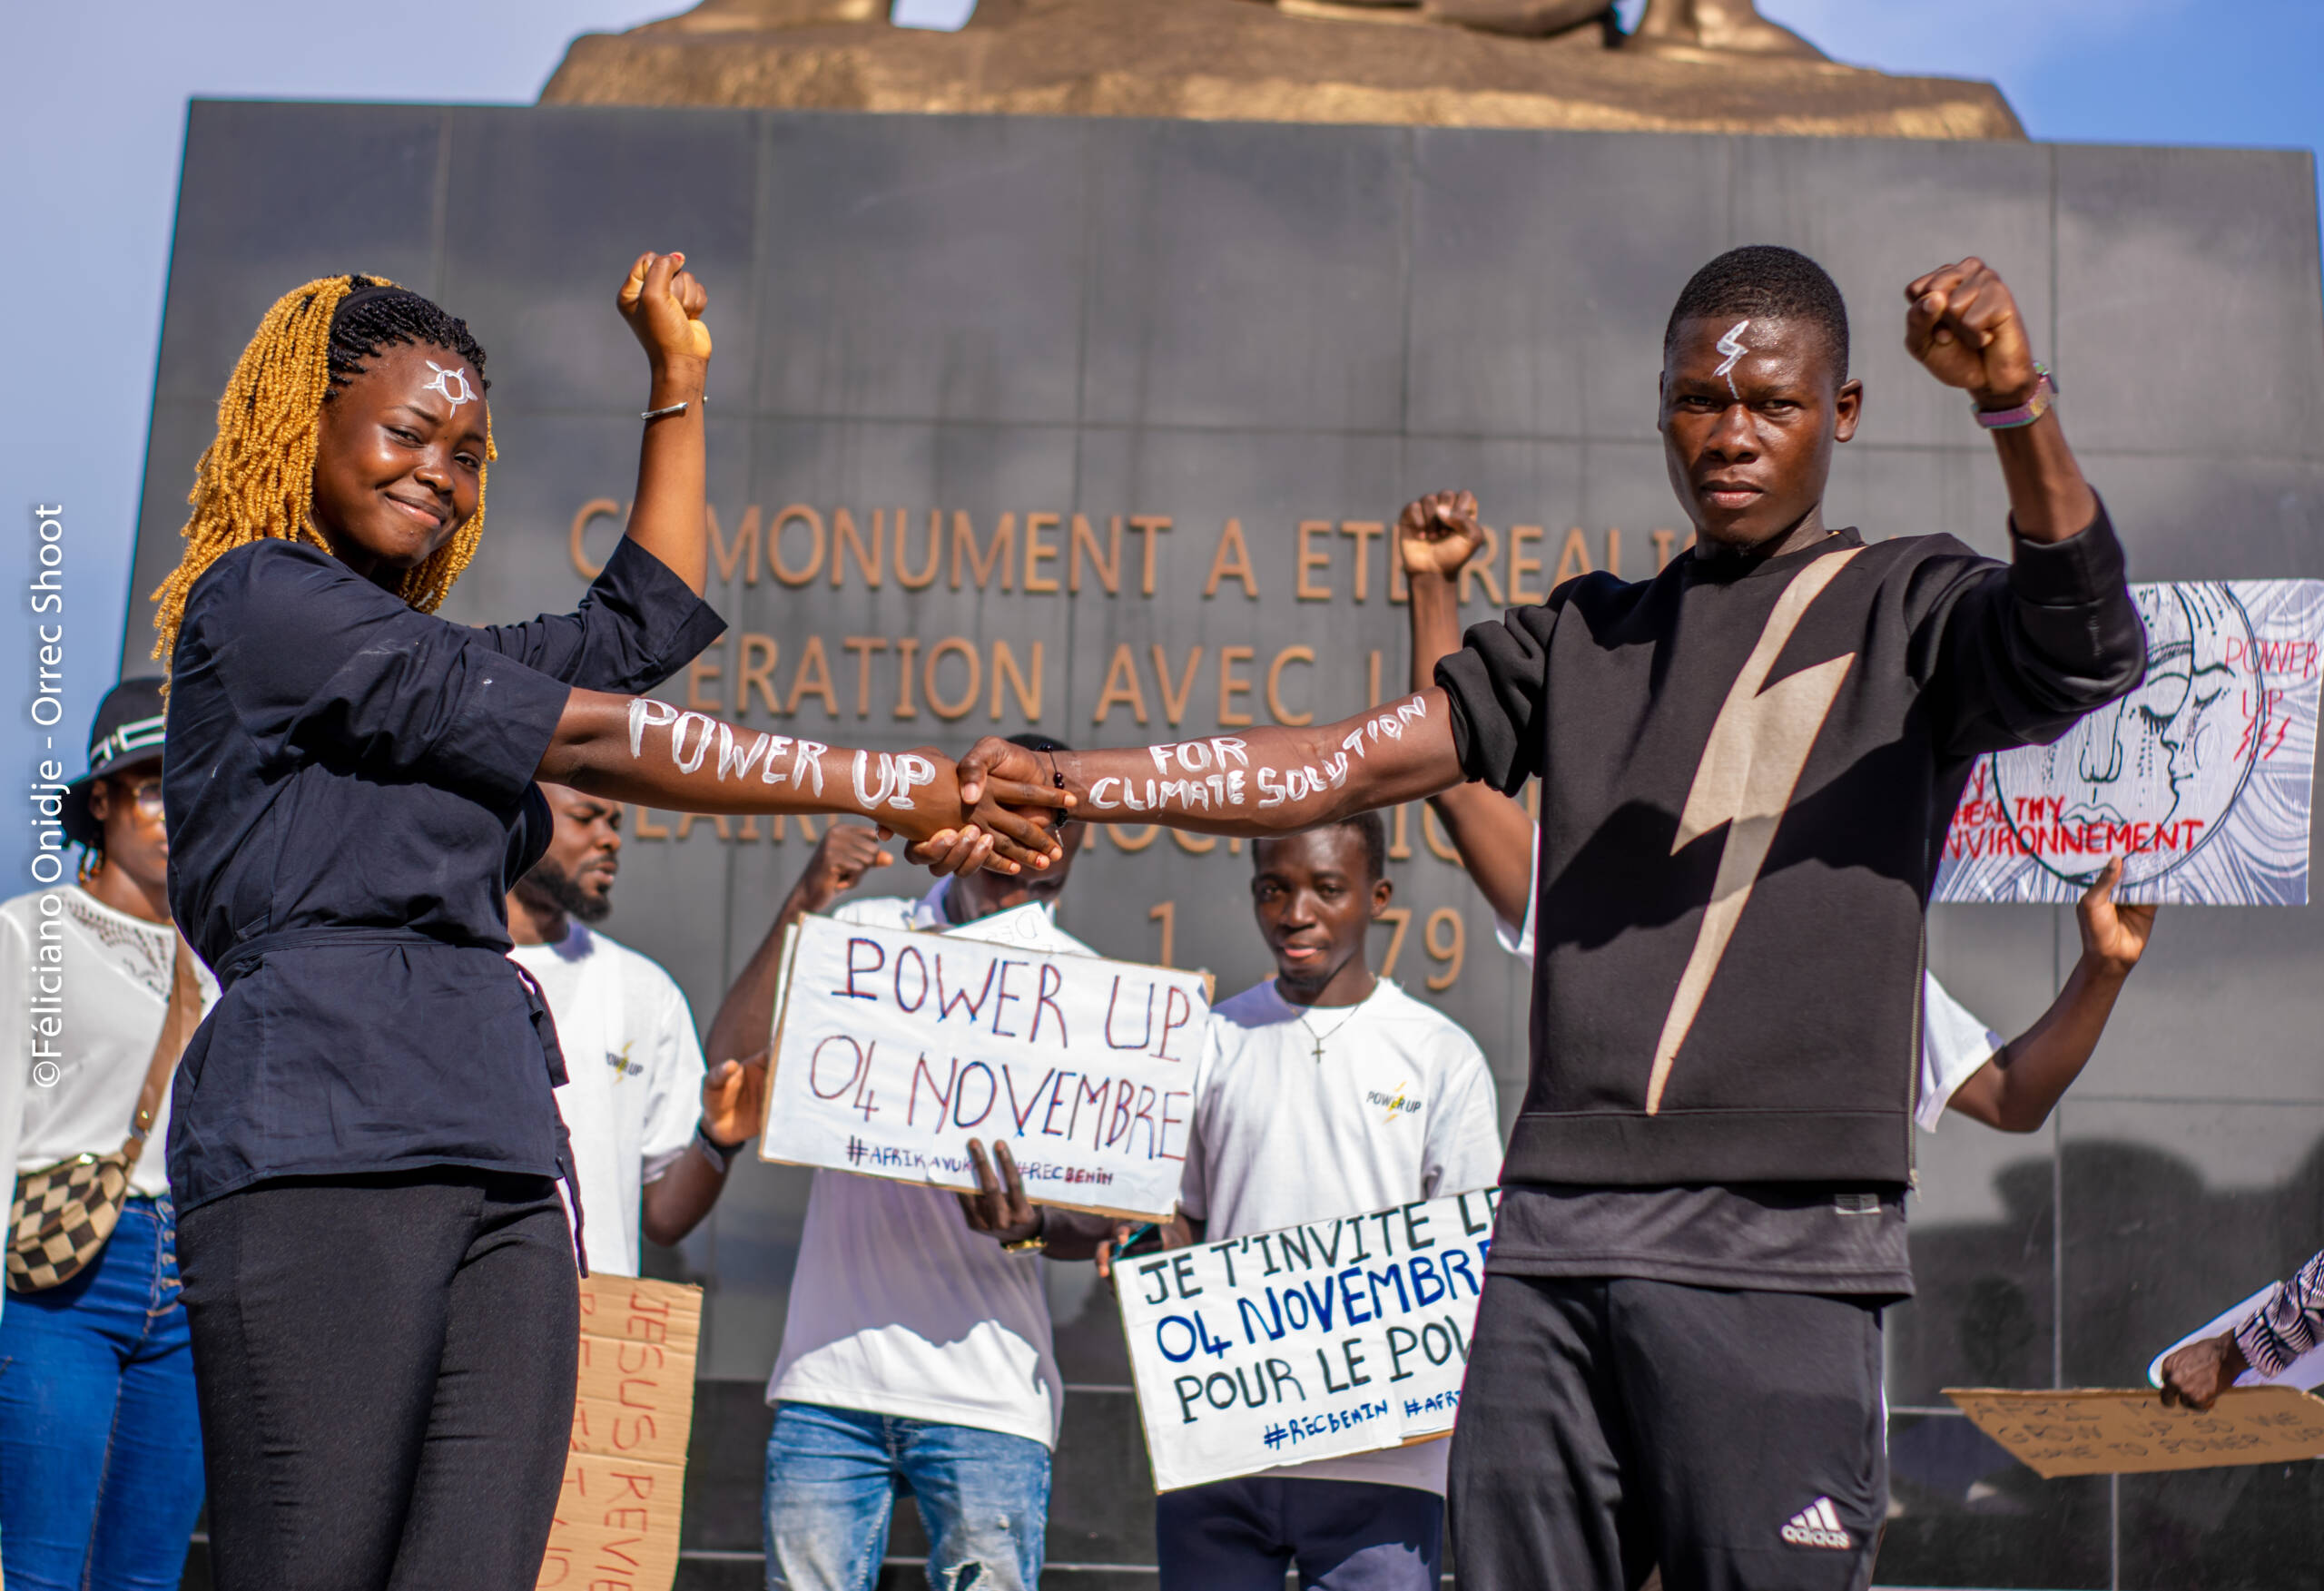 Benin: para aktivis beraksi meningkatkan kesadaran, merekrut pendukung, dan memanfaatkan kreativitas ereka untuk mempersiapkan aksi-aksi Power Up. Kredit foto: 350 Africa